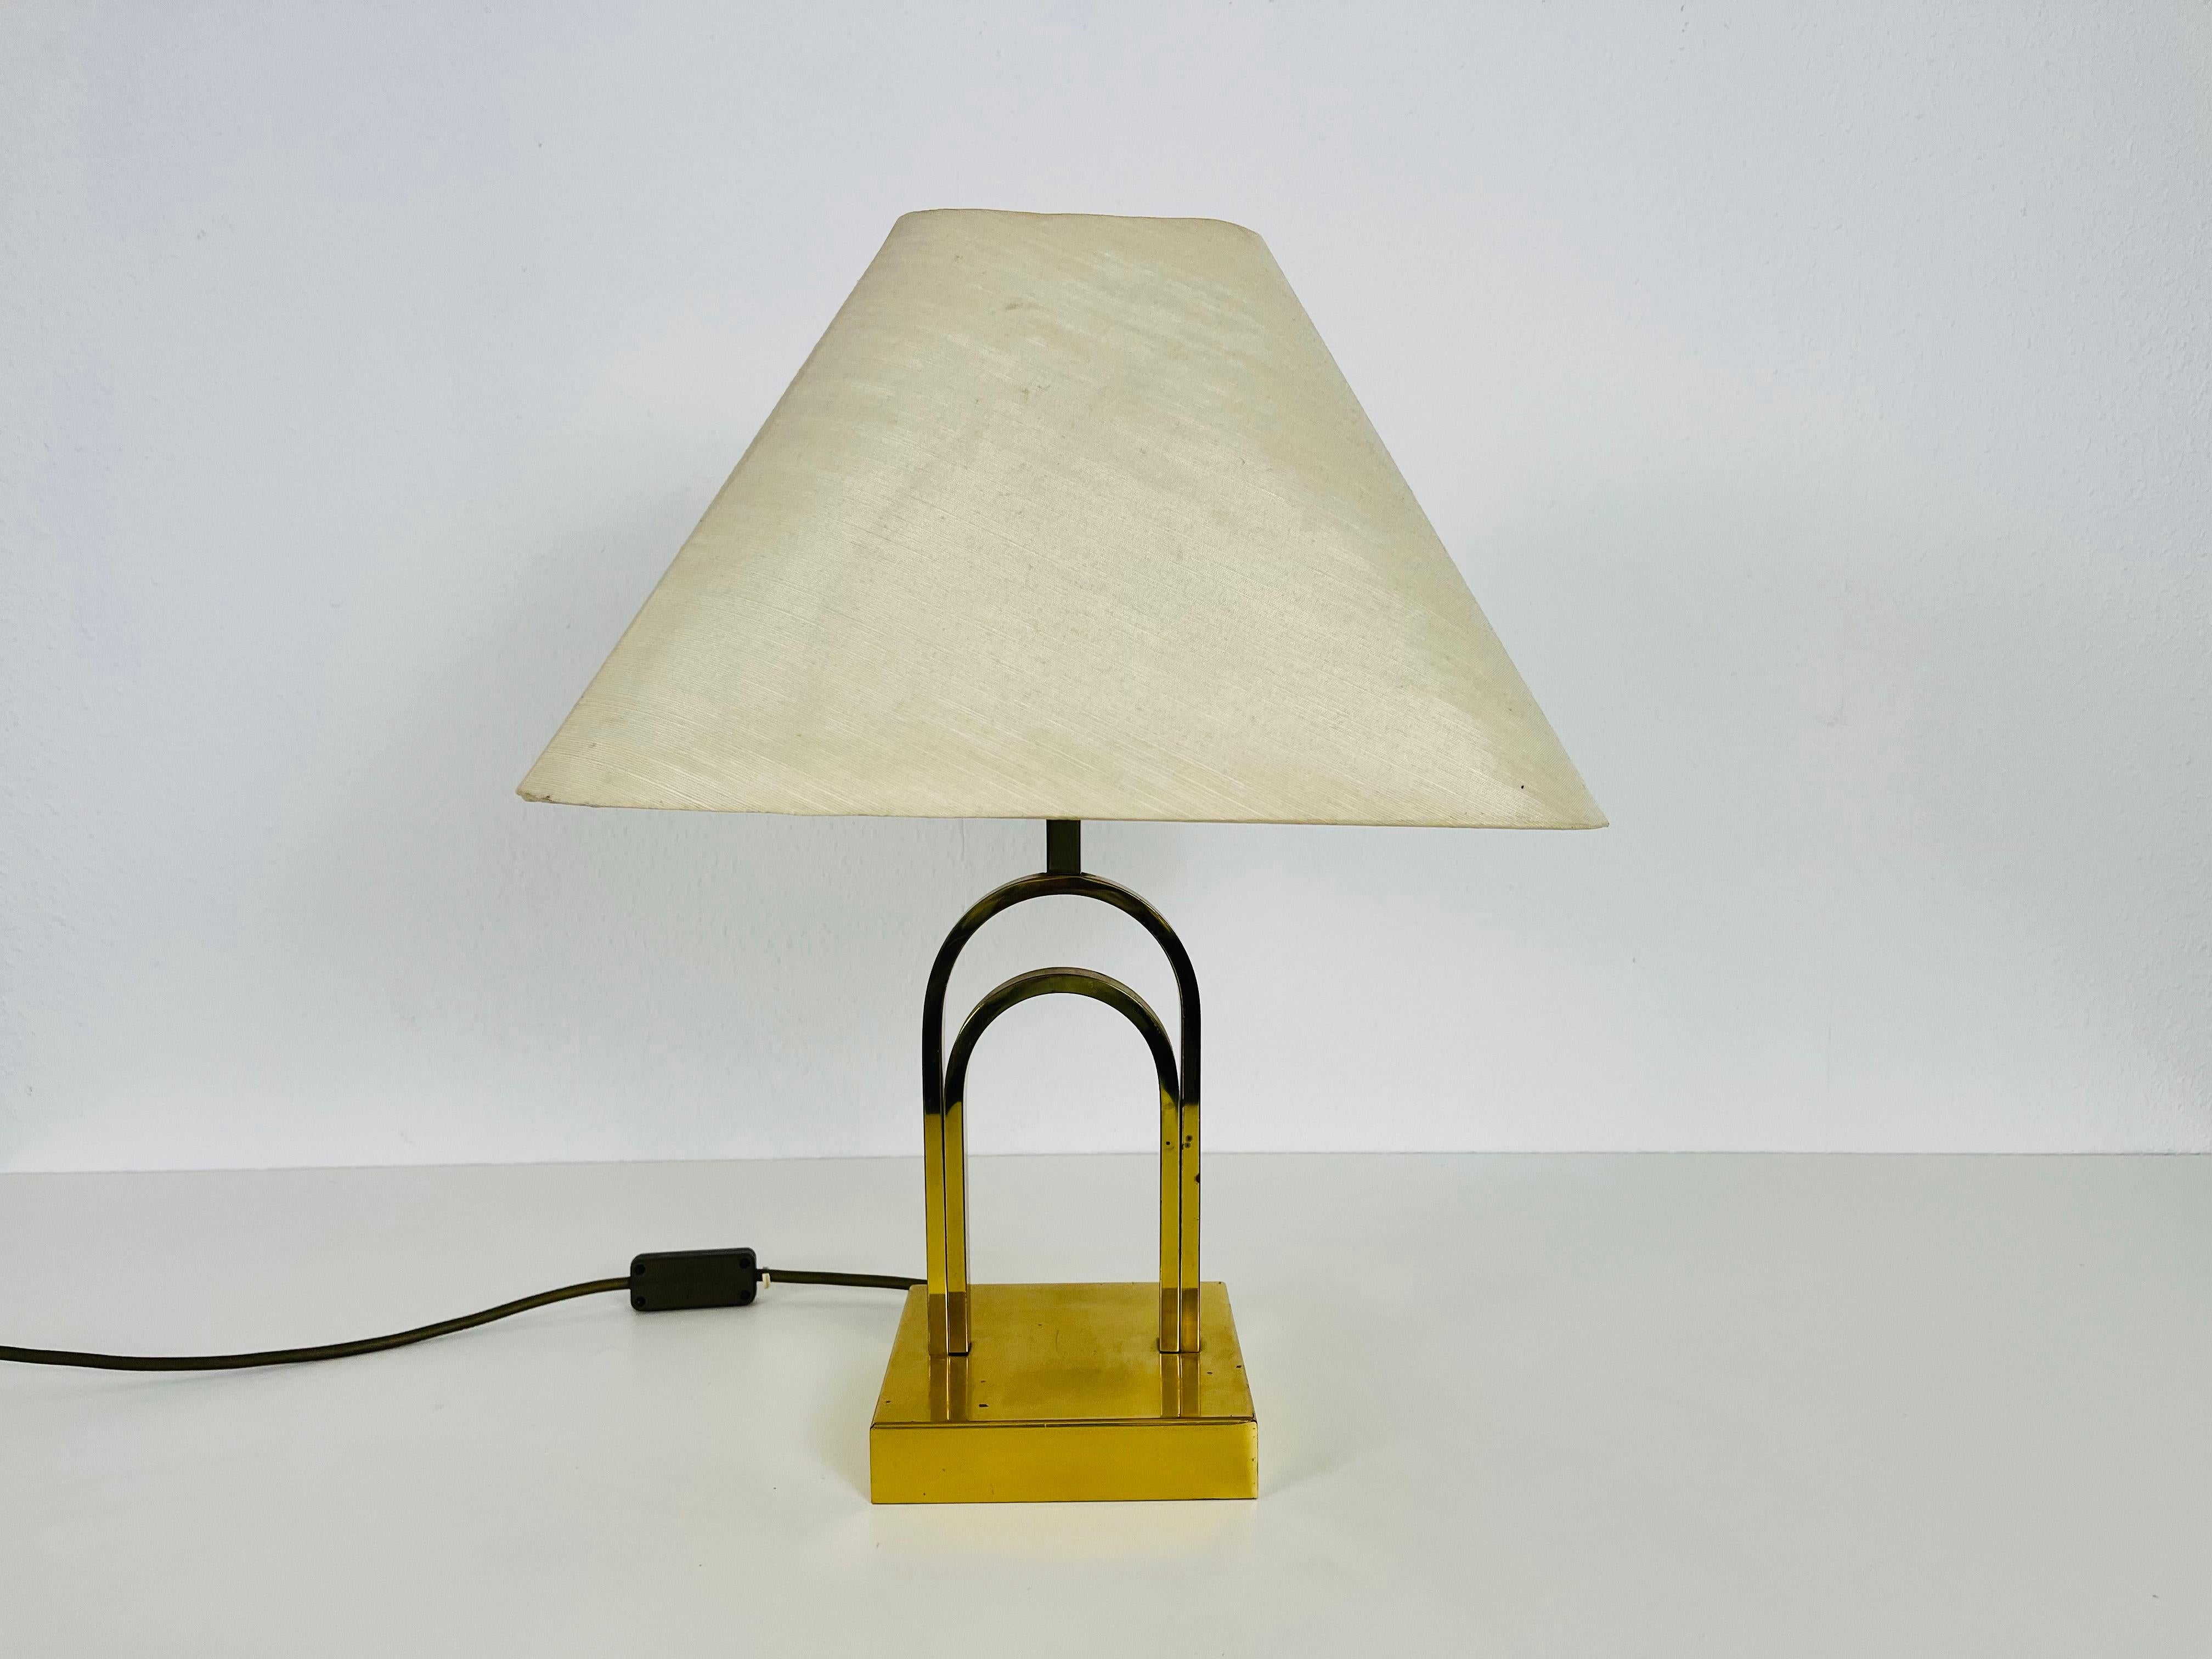 Une belle grande lampe de table fabriquée dans les années 1960. La base est en laiton massif. L'abat-jour est en tissu et a une couleur beige.

Le luminaire nécessite une ampoule E27. Fonctionne avec les deux 120/220 V. Bon état